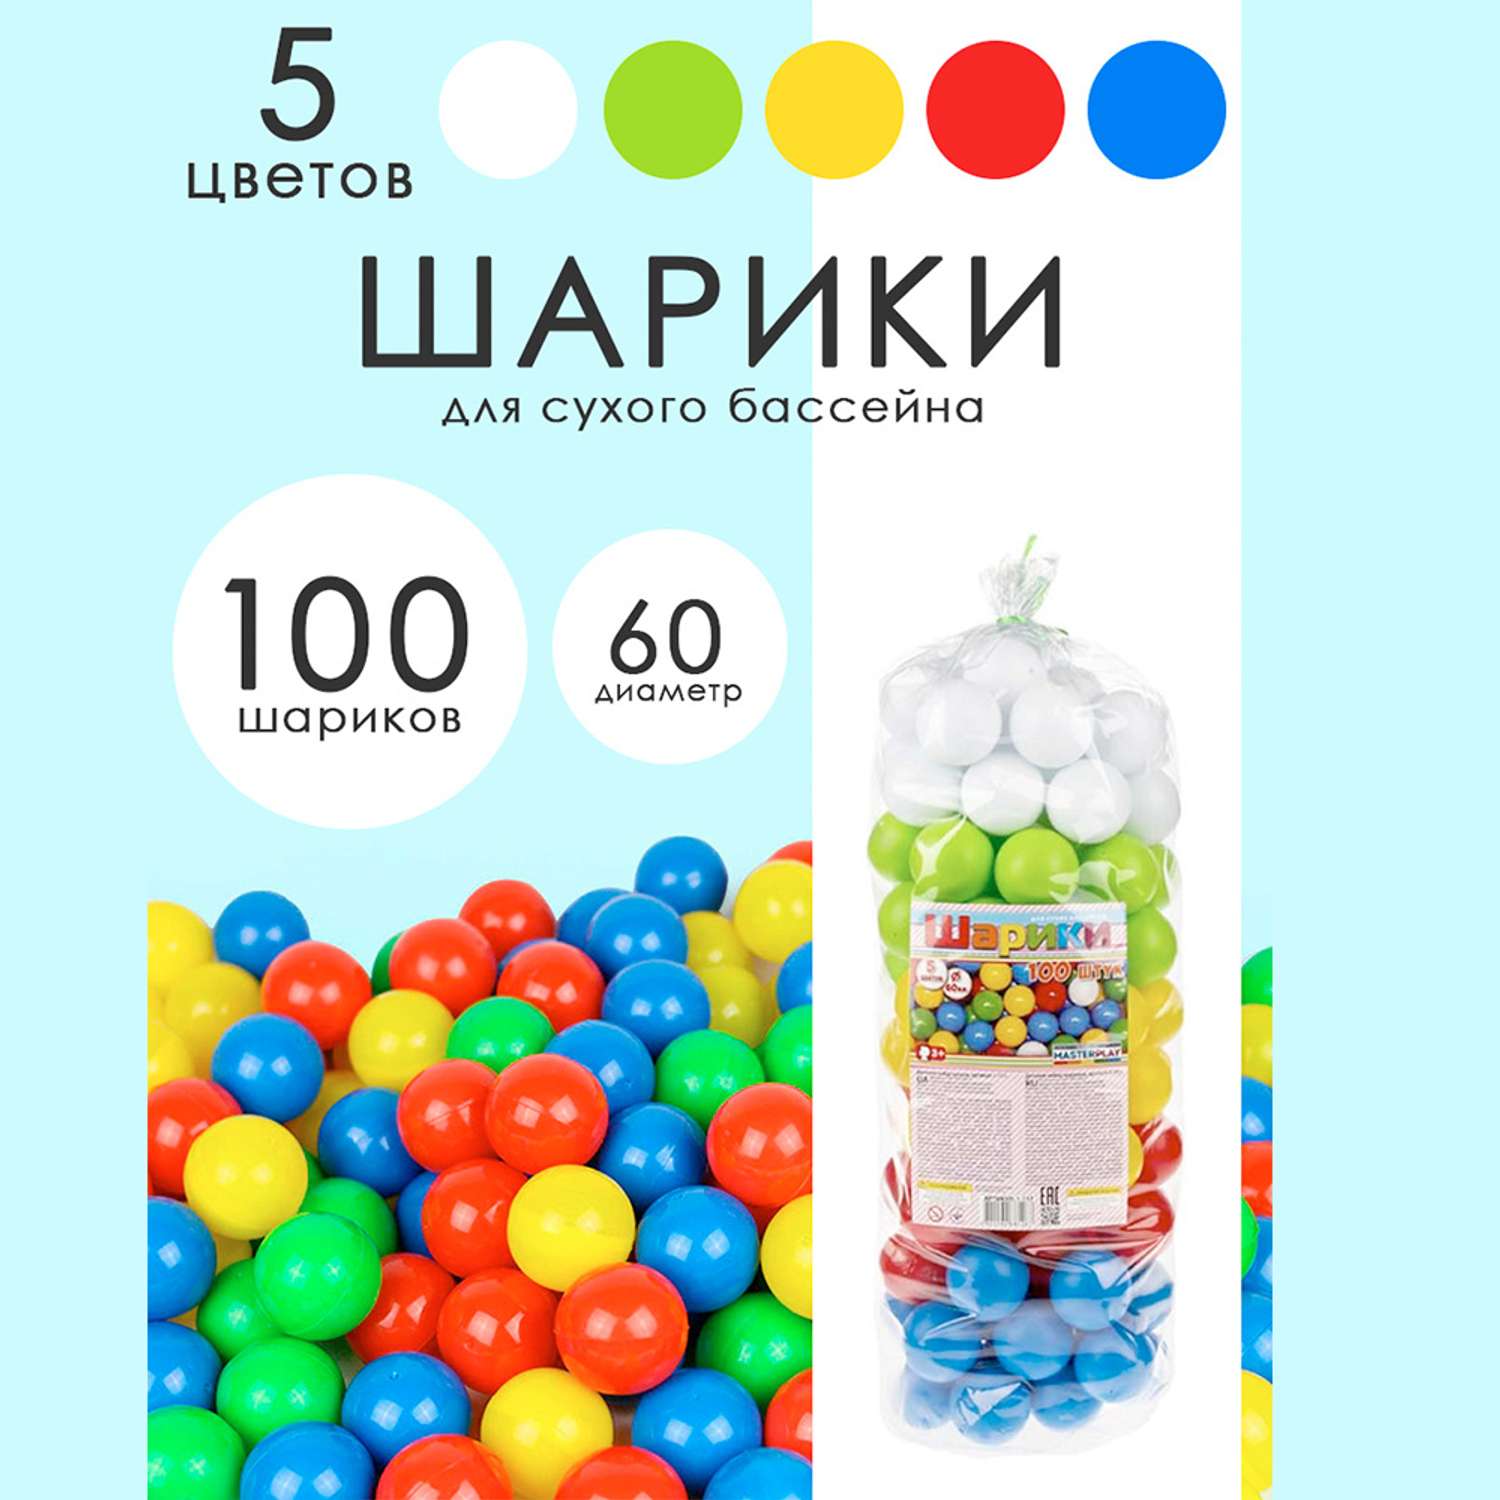 Шарики цветные Colorplast для сухого бассейна 60 мм 100 шт - фото 3